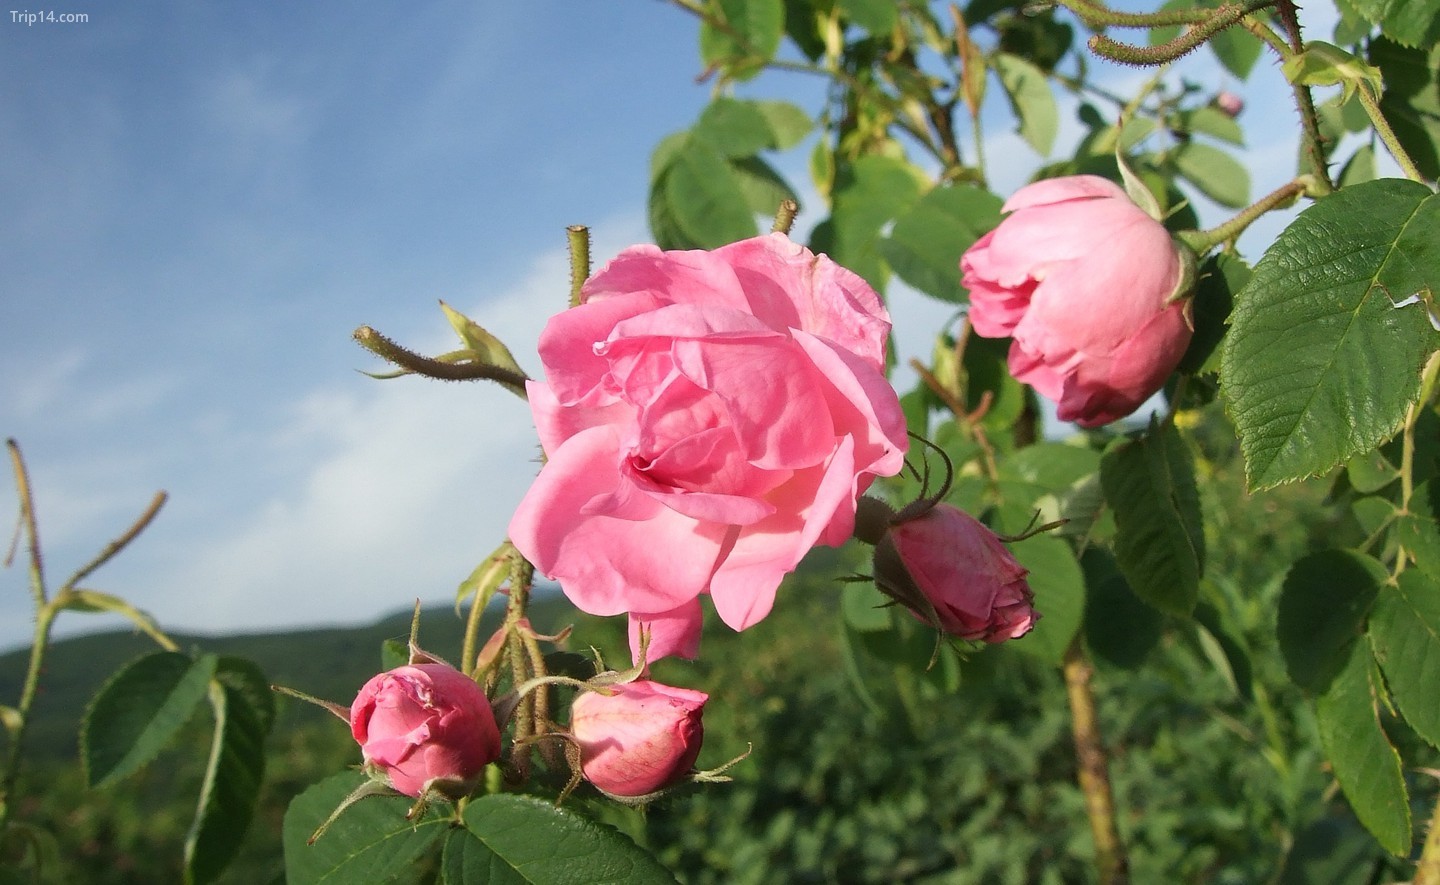  Hoa hồng từ Thung lũng hoa hồng ở Bulgaira   |   